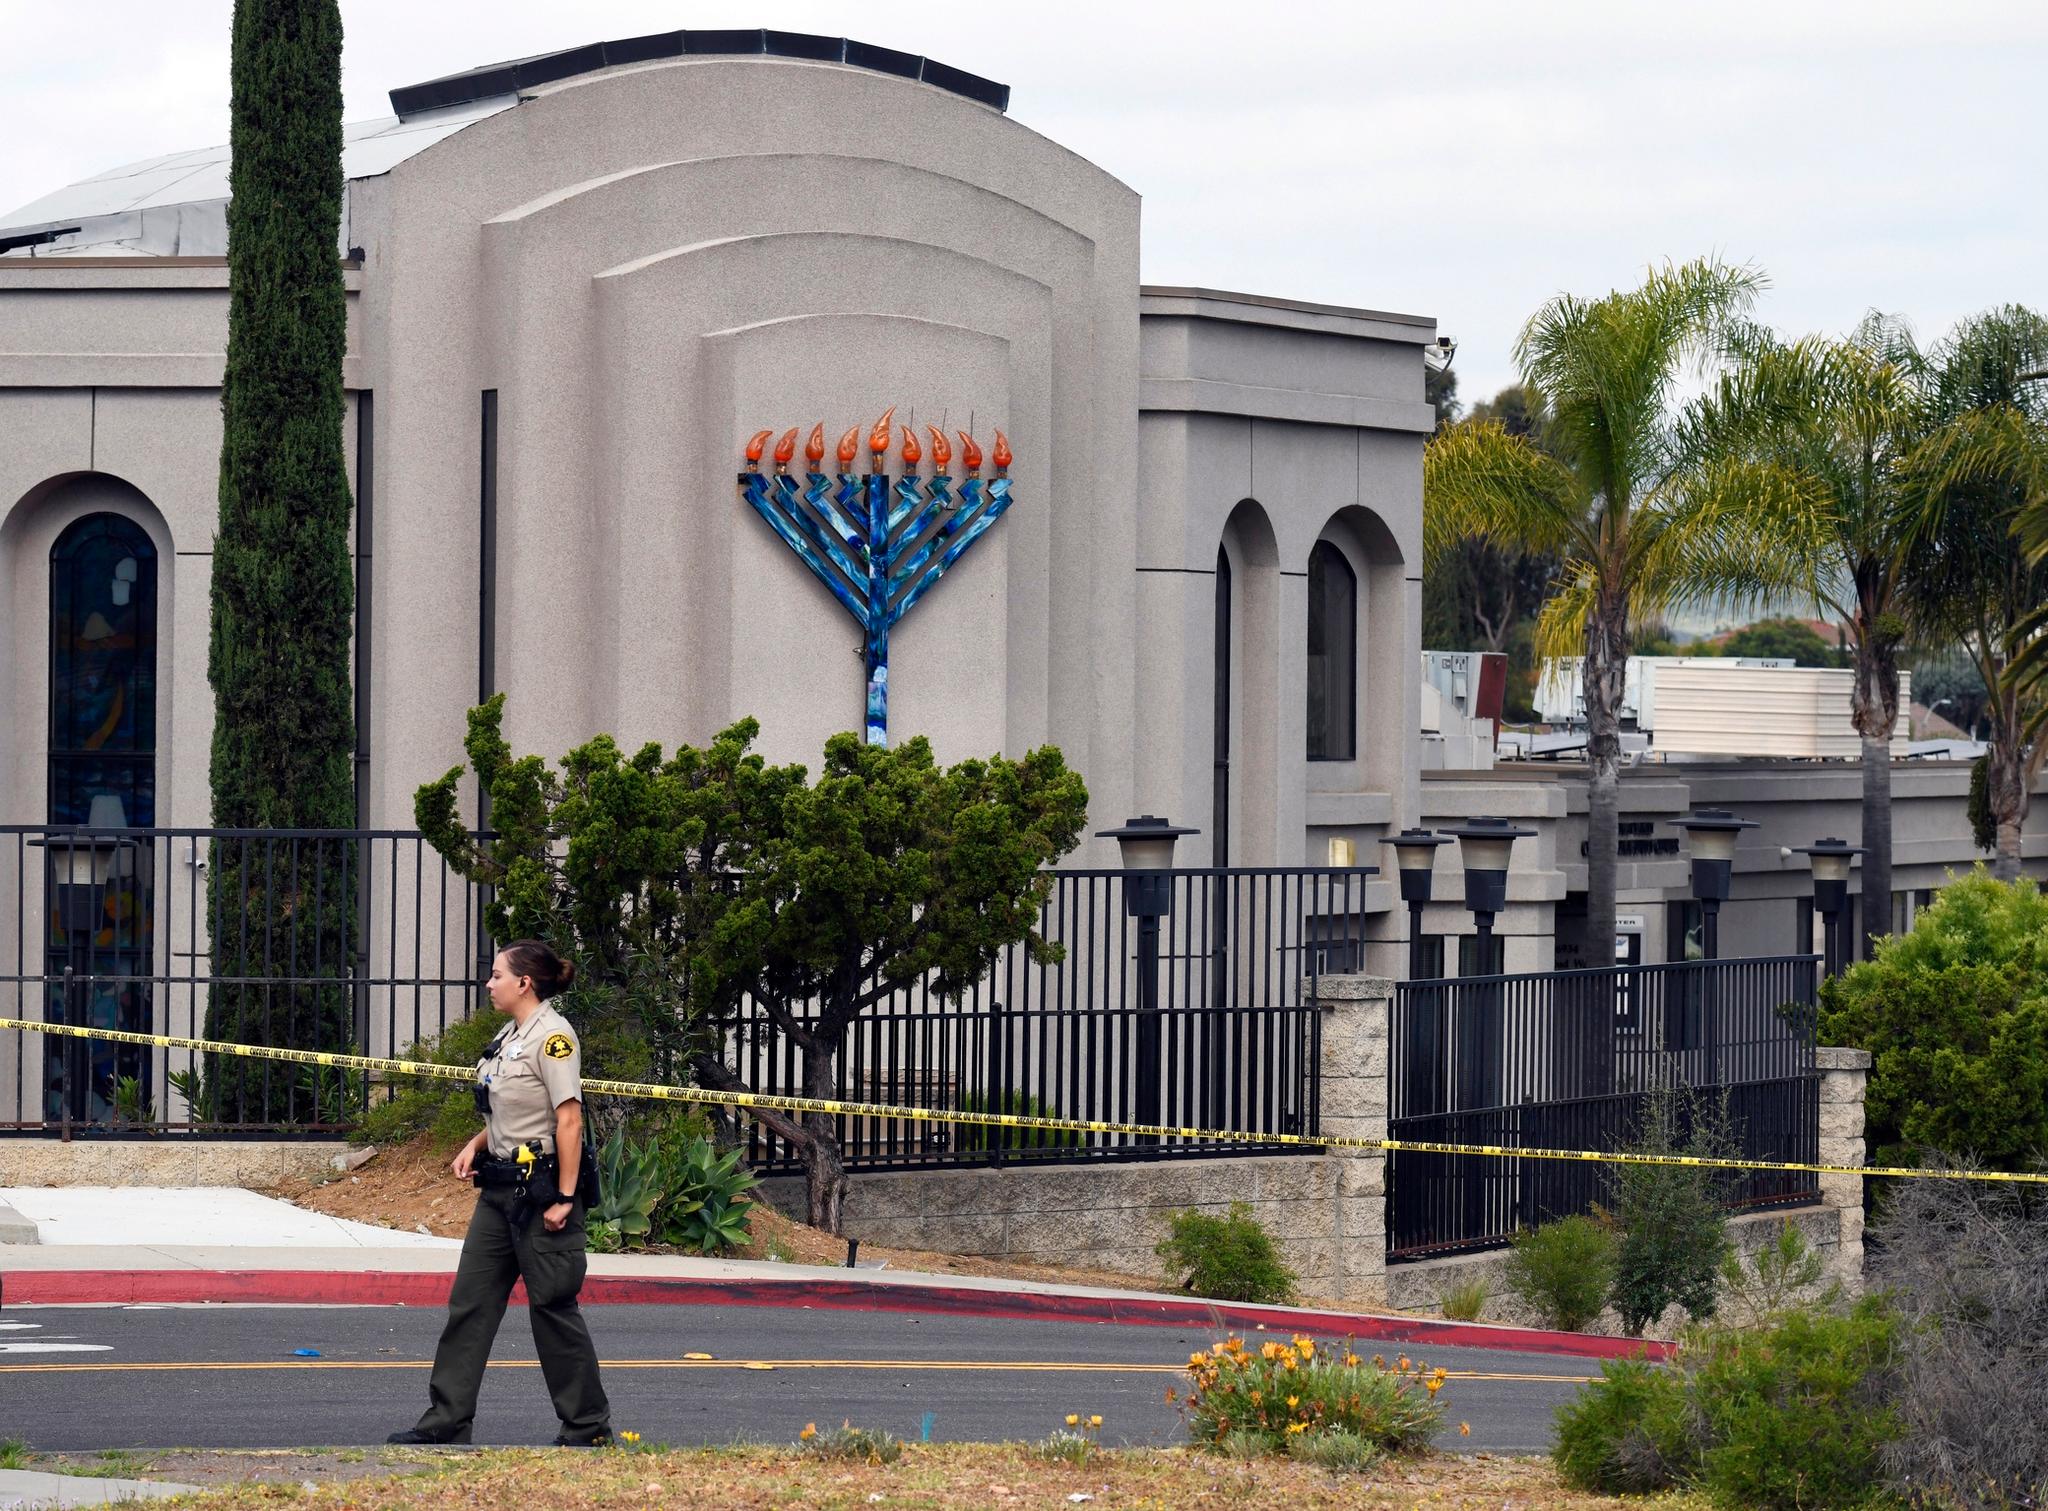 28. april lastet en 19 år gammel mann opp et manifest på 8chan. Kort tid etter ble en person drept og tre skadet ved synagogen Chabad i Poway.